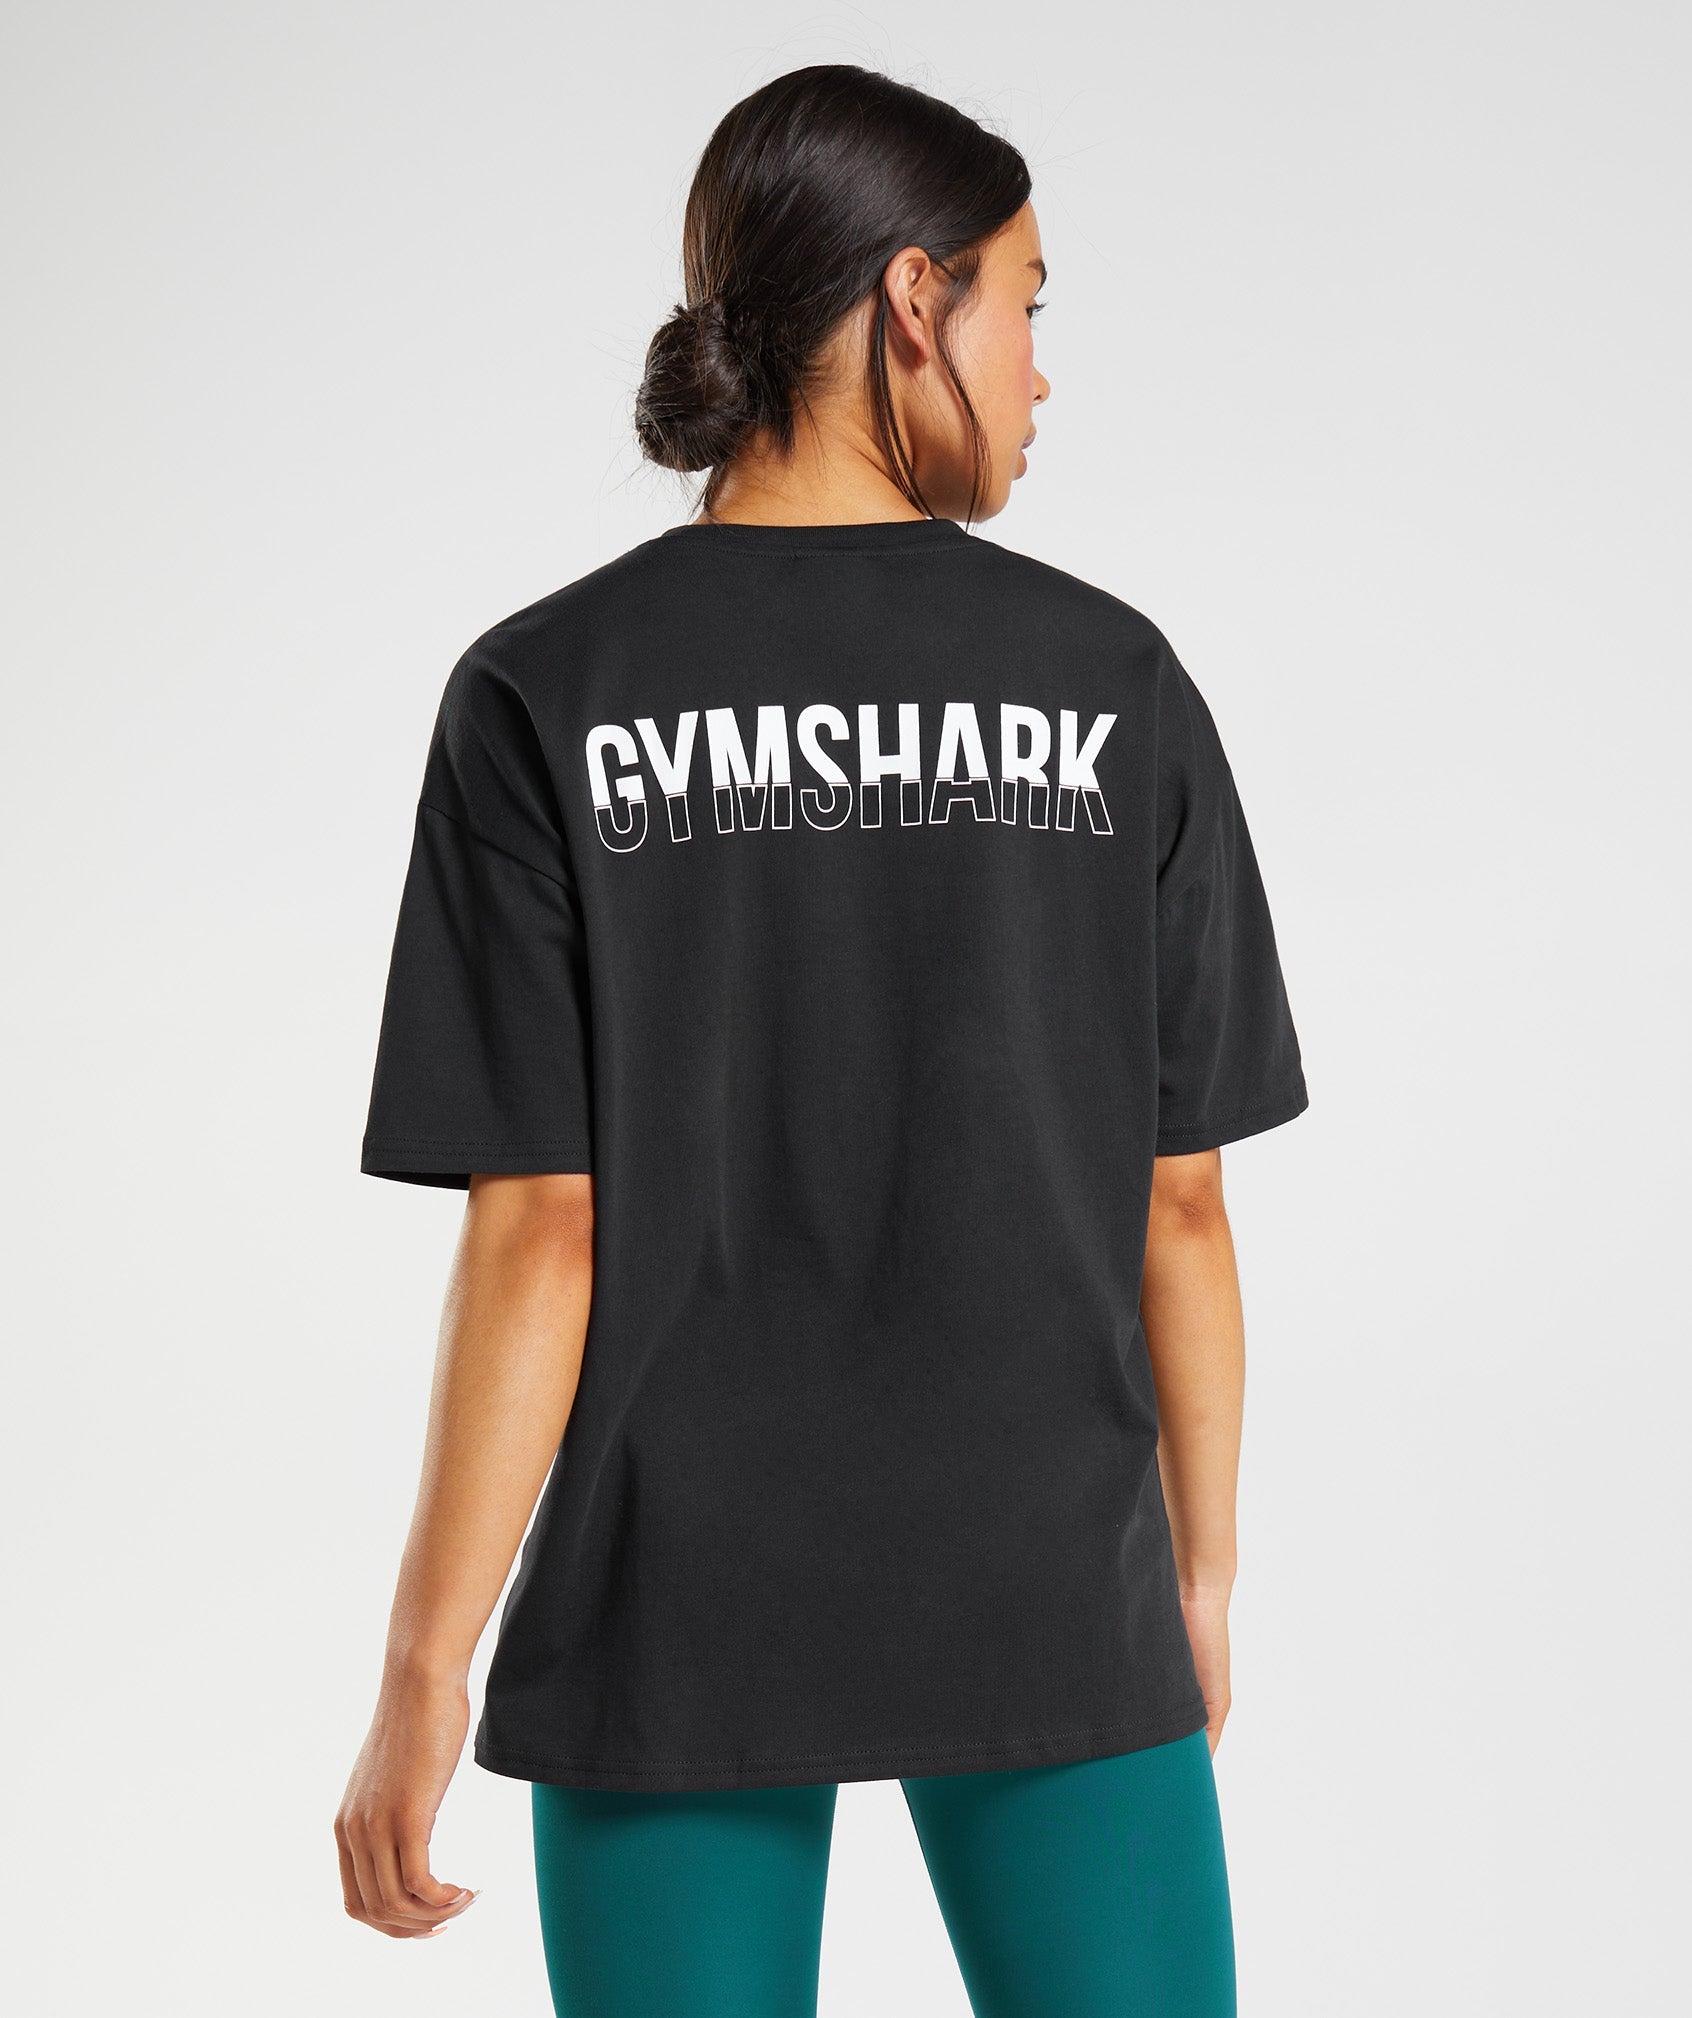 GYMSHARK Gymshark CHALK - Leggings - Women's - black - Private